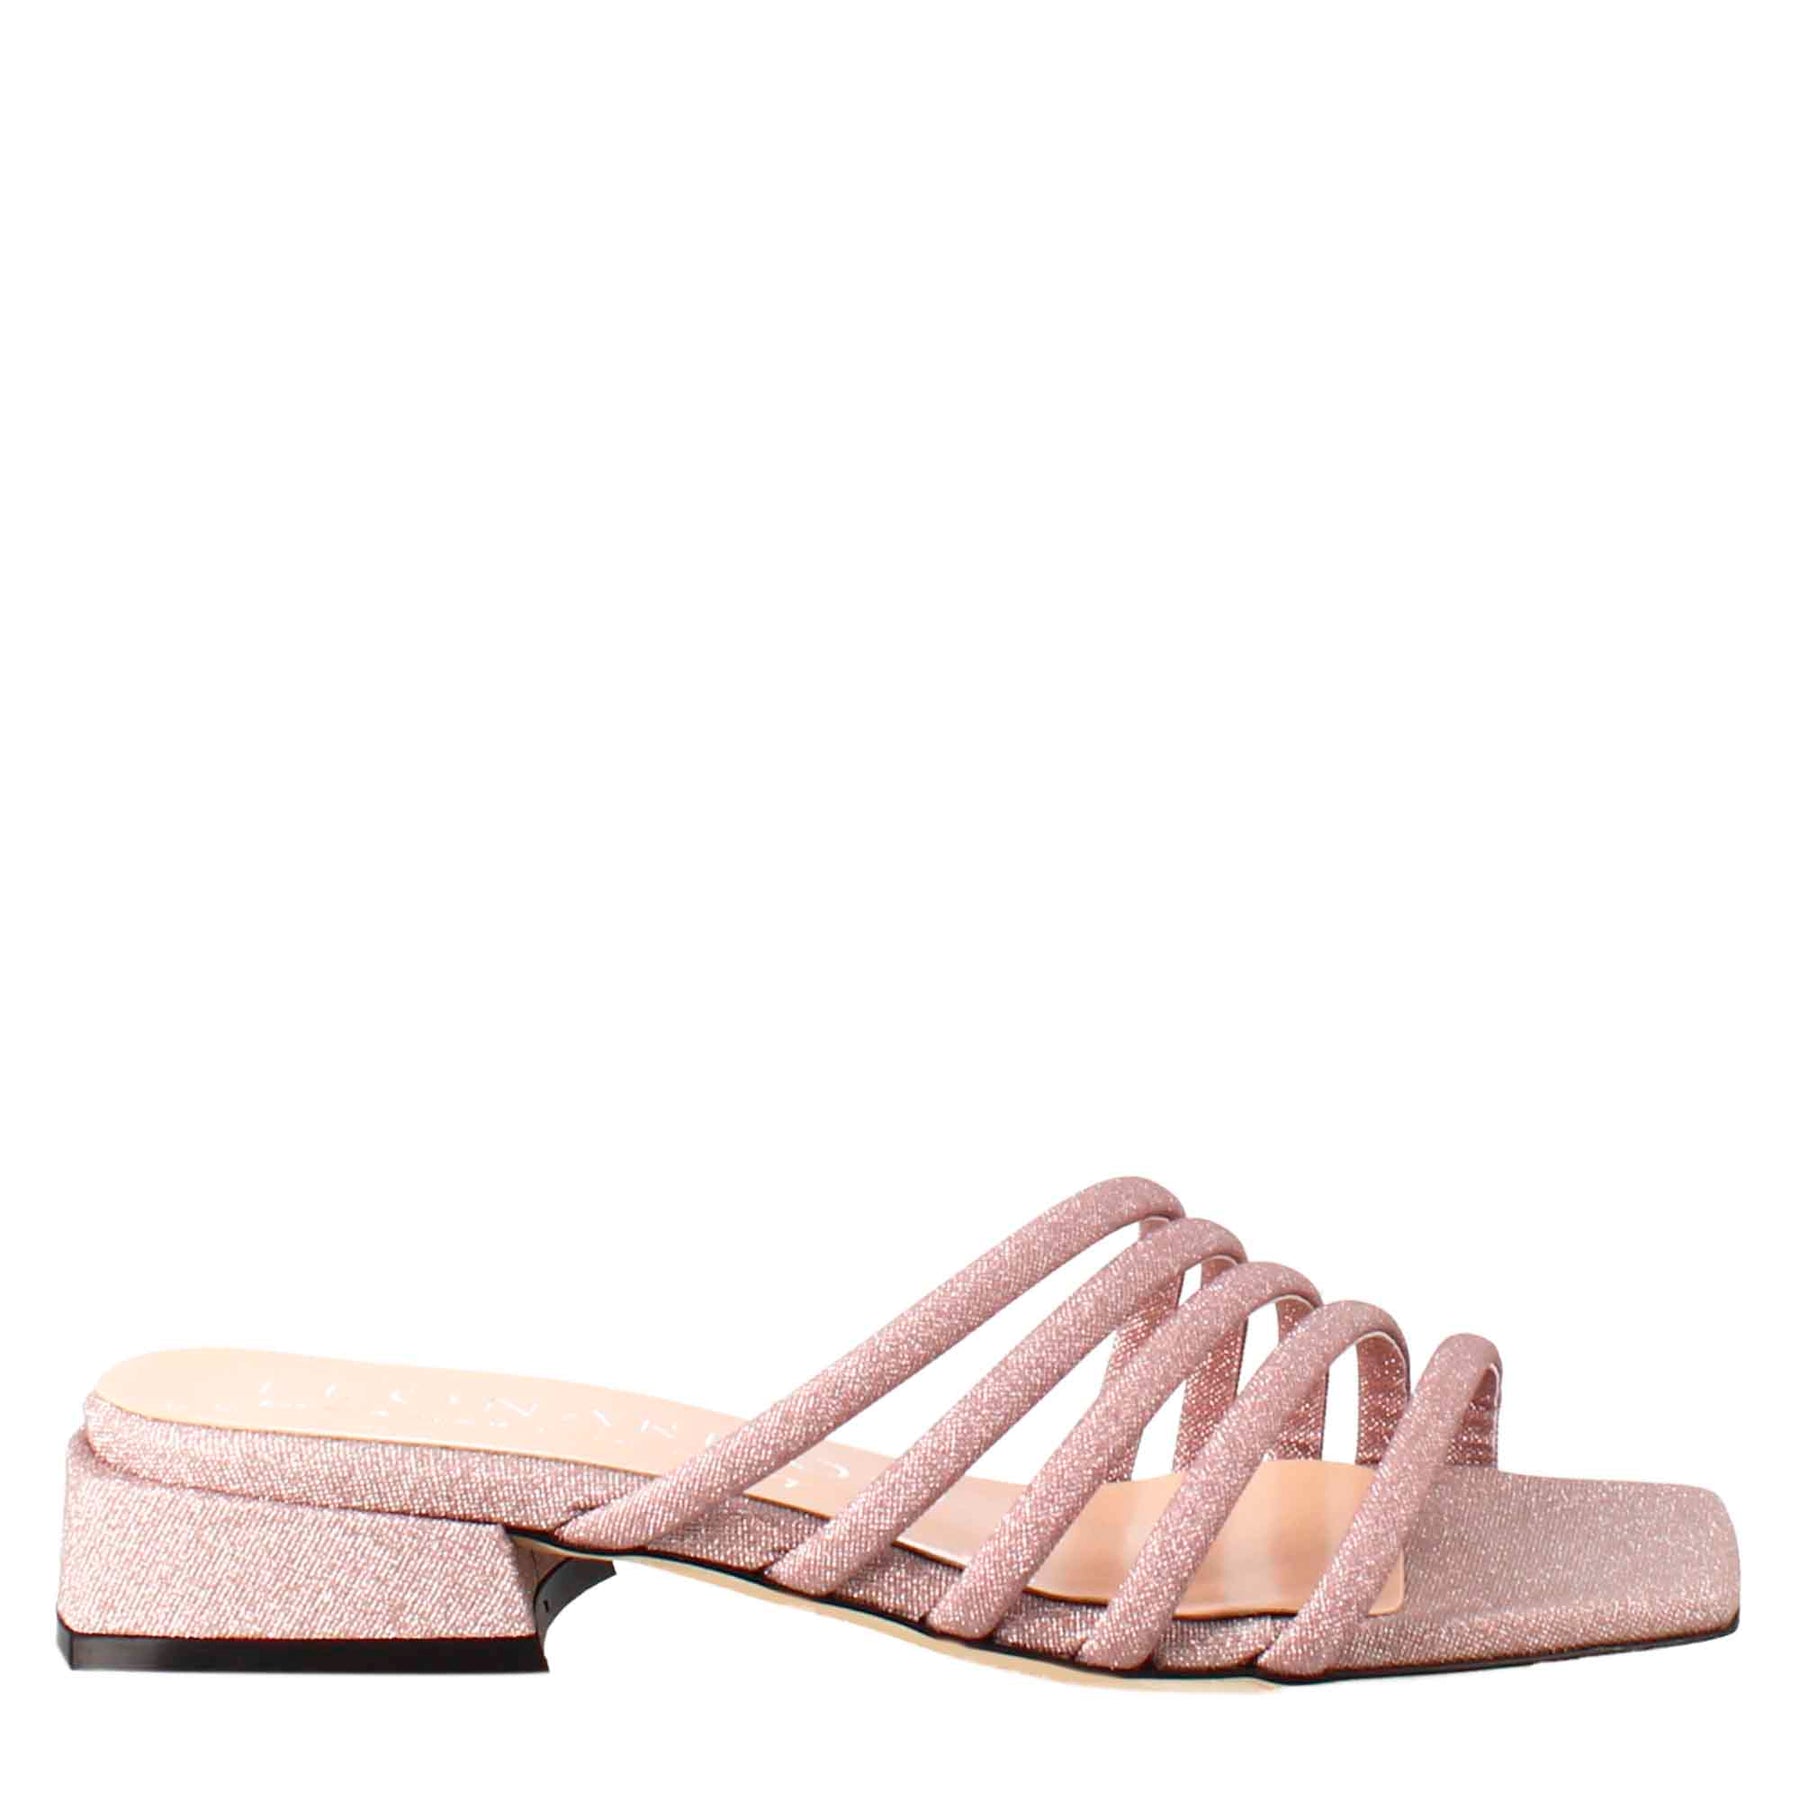 Sandalo da donna a forma squadrata in pelle rosa con glitter